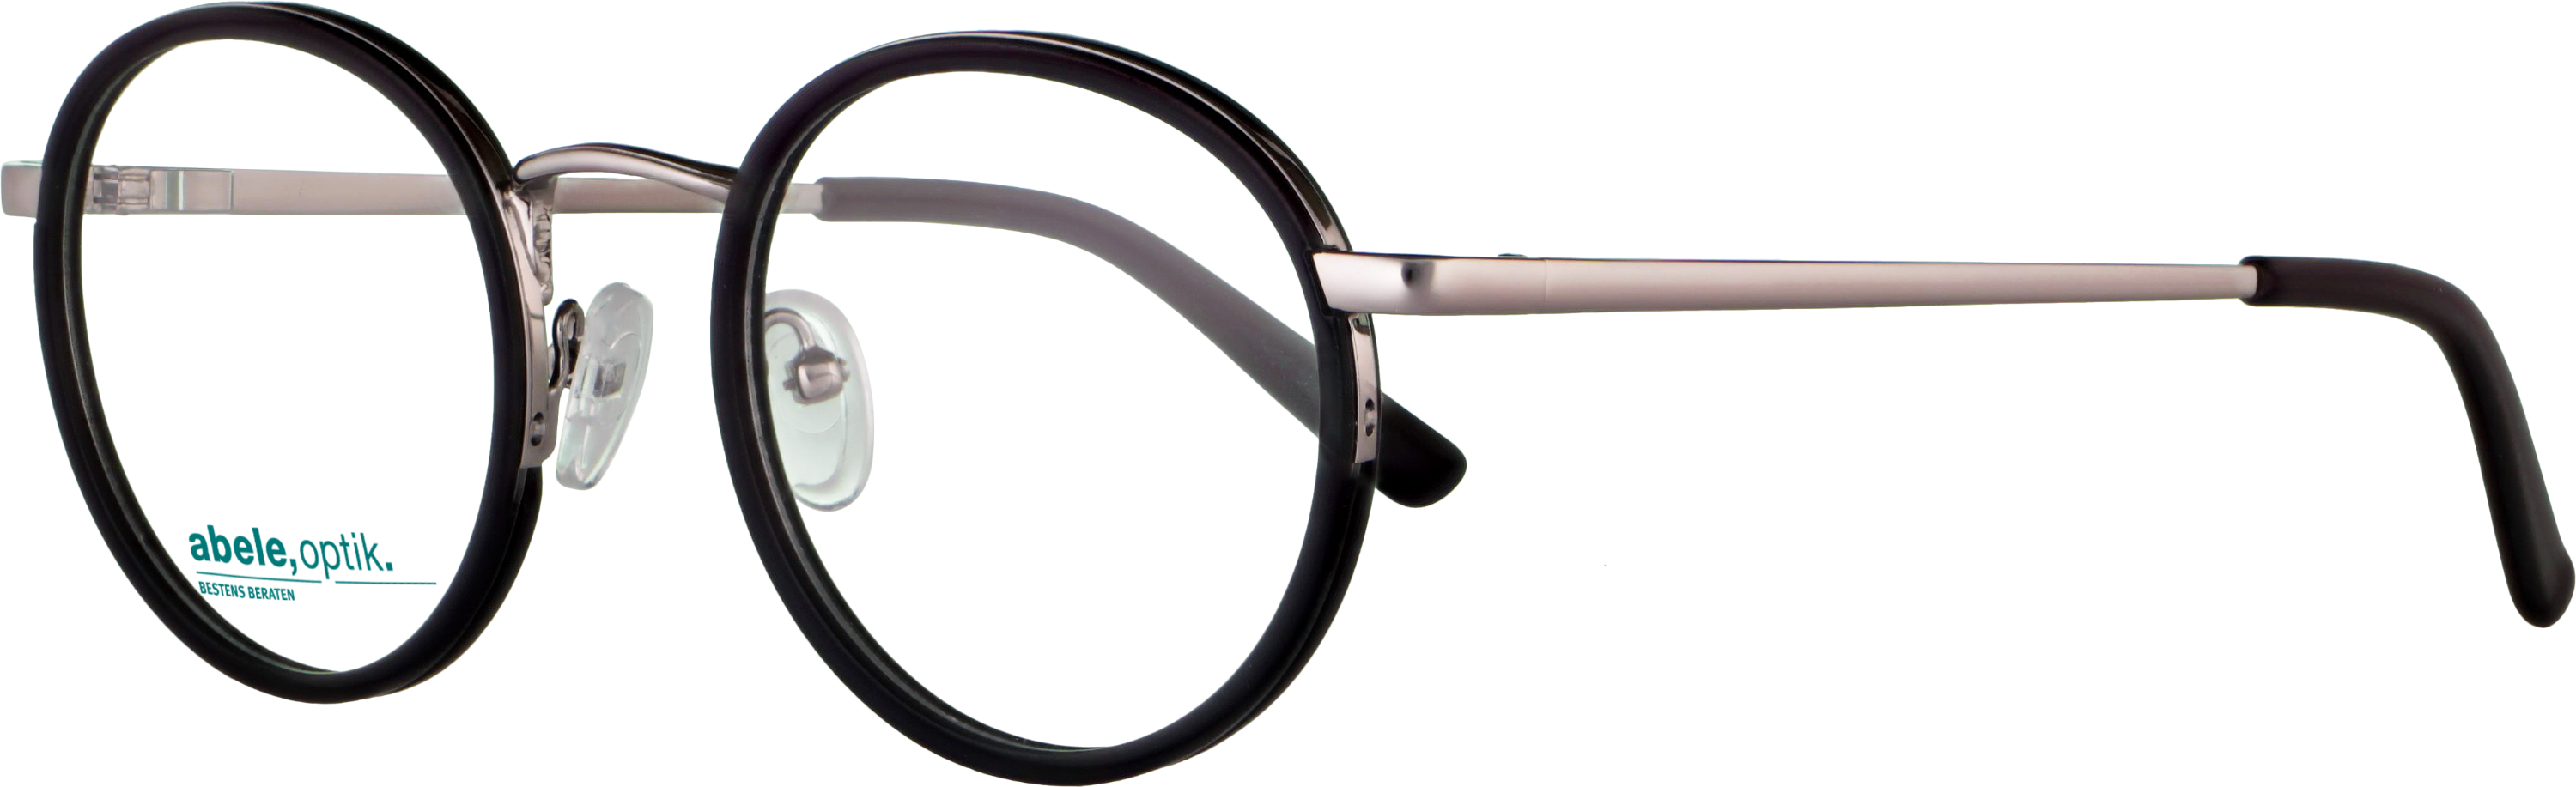 Das Bild zeigt die Korrektionsbrille 142841 von der Marke Abele Optik in dunkelblau gun .